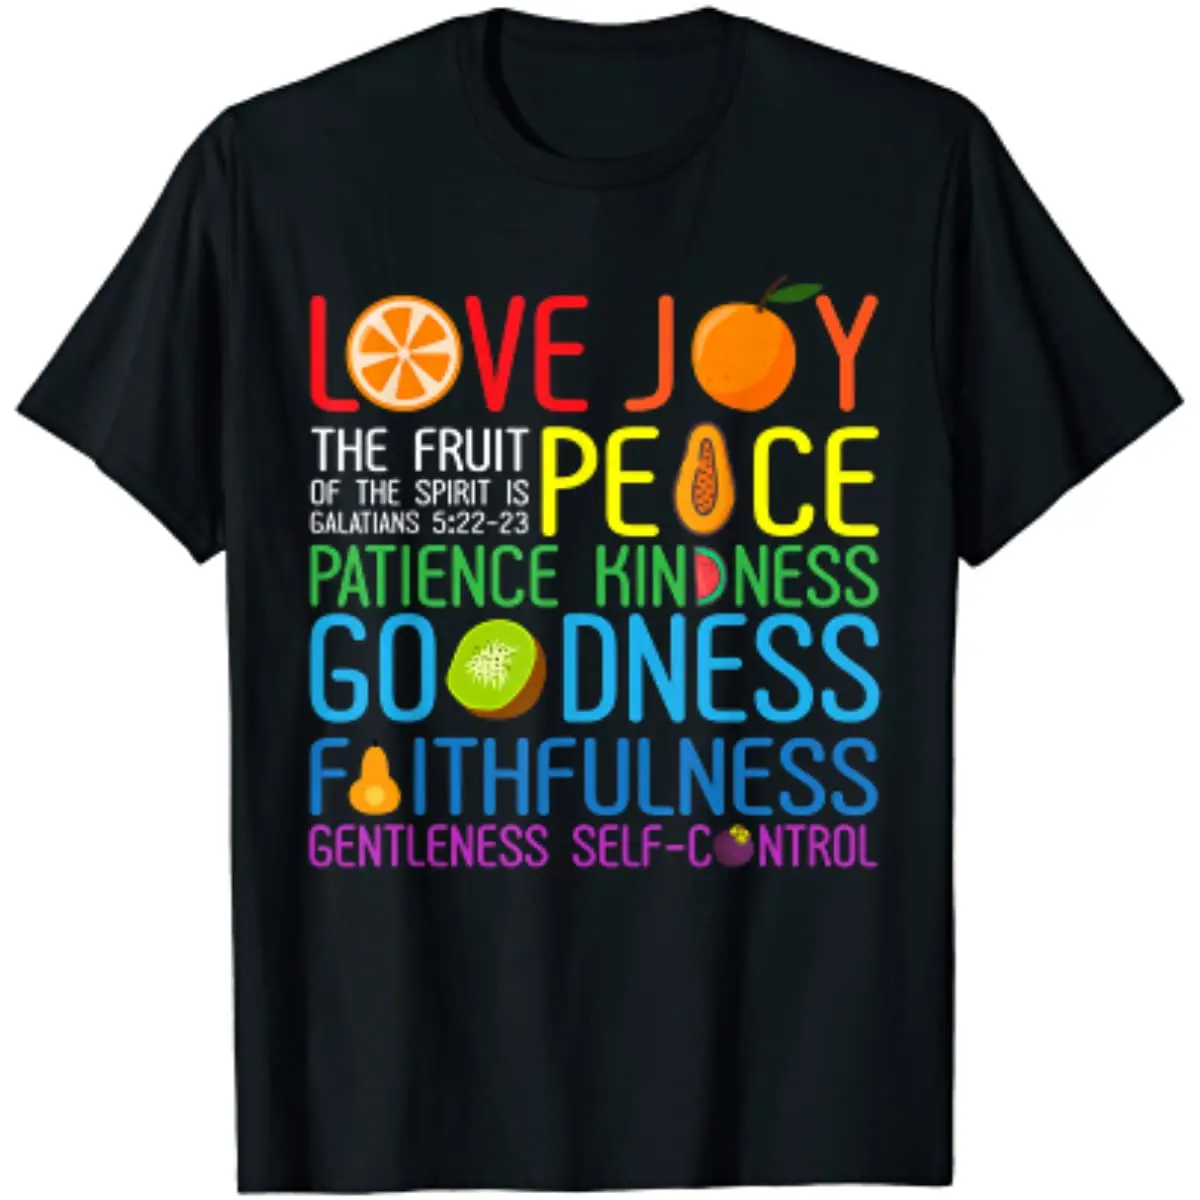 

Футболка с надписью Love Joy The Fruit of The Spirit Is Peace, терпение, доброту, Повседневная хлопковая футболка на каждый день, четыре сезона, футболки оверсайз